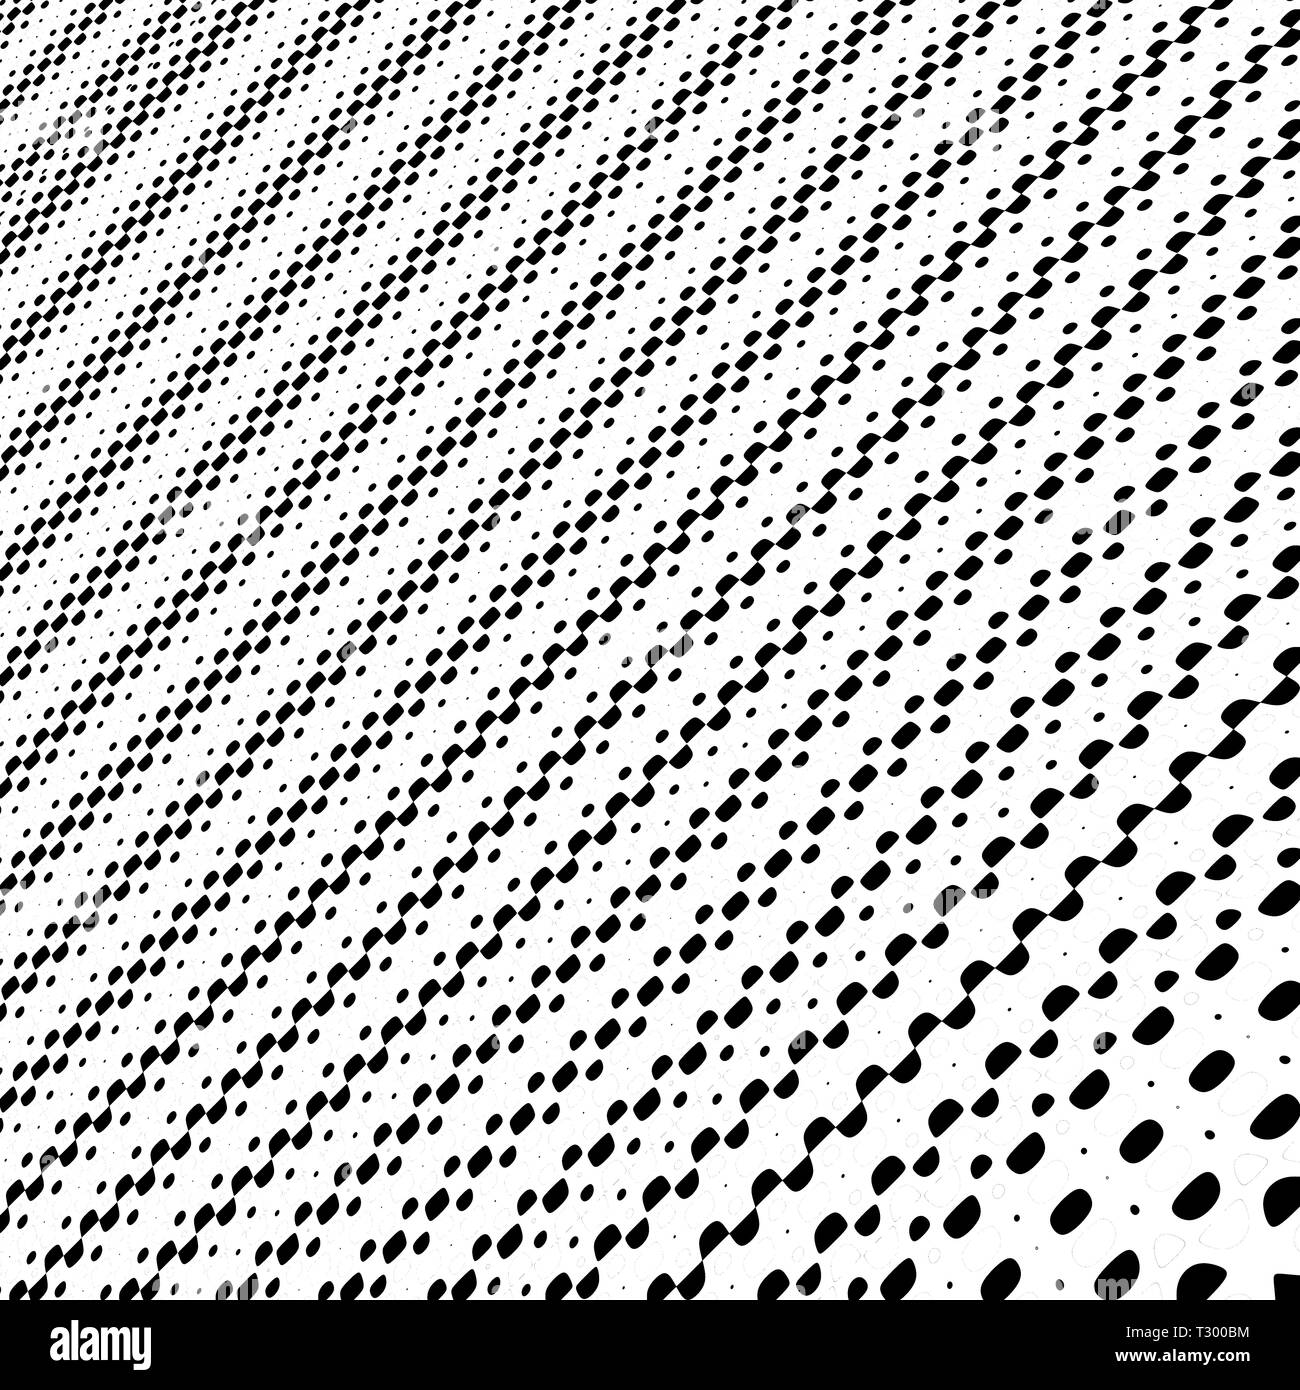 Arte por Computadora: dibujo de puntos y círculos de diferente tamaño y  color formando una imagen simétrica o perspectivic Fotografía de stock -  Alamy